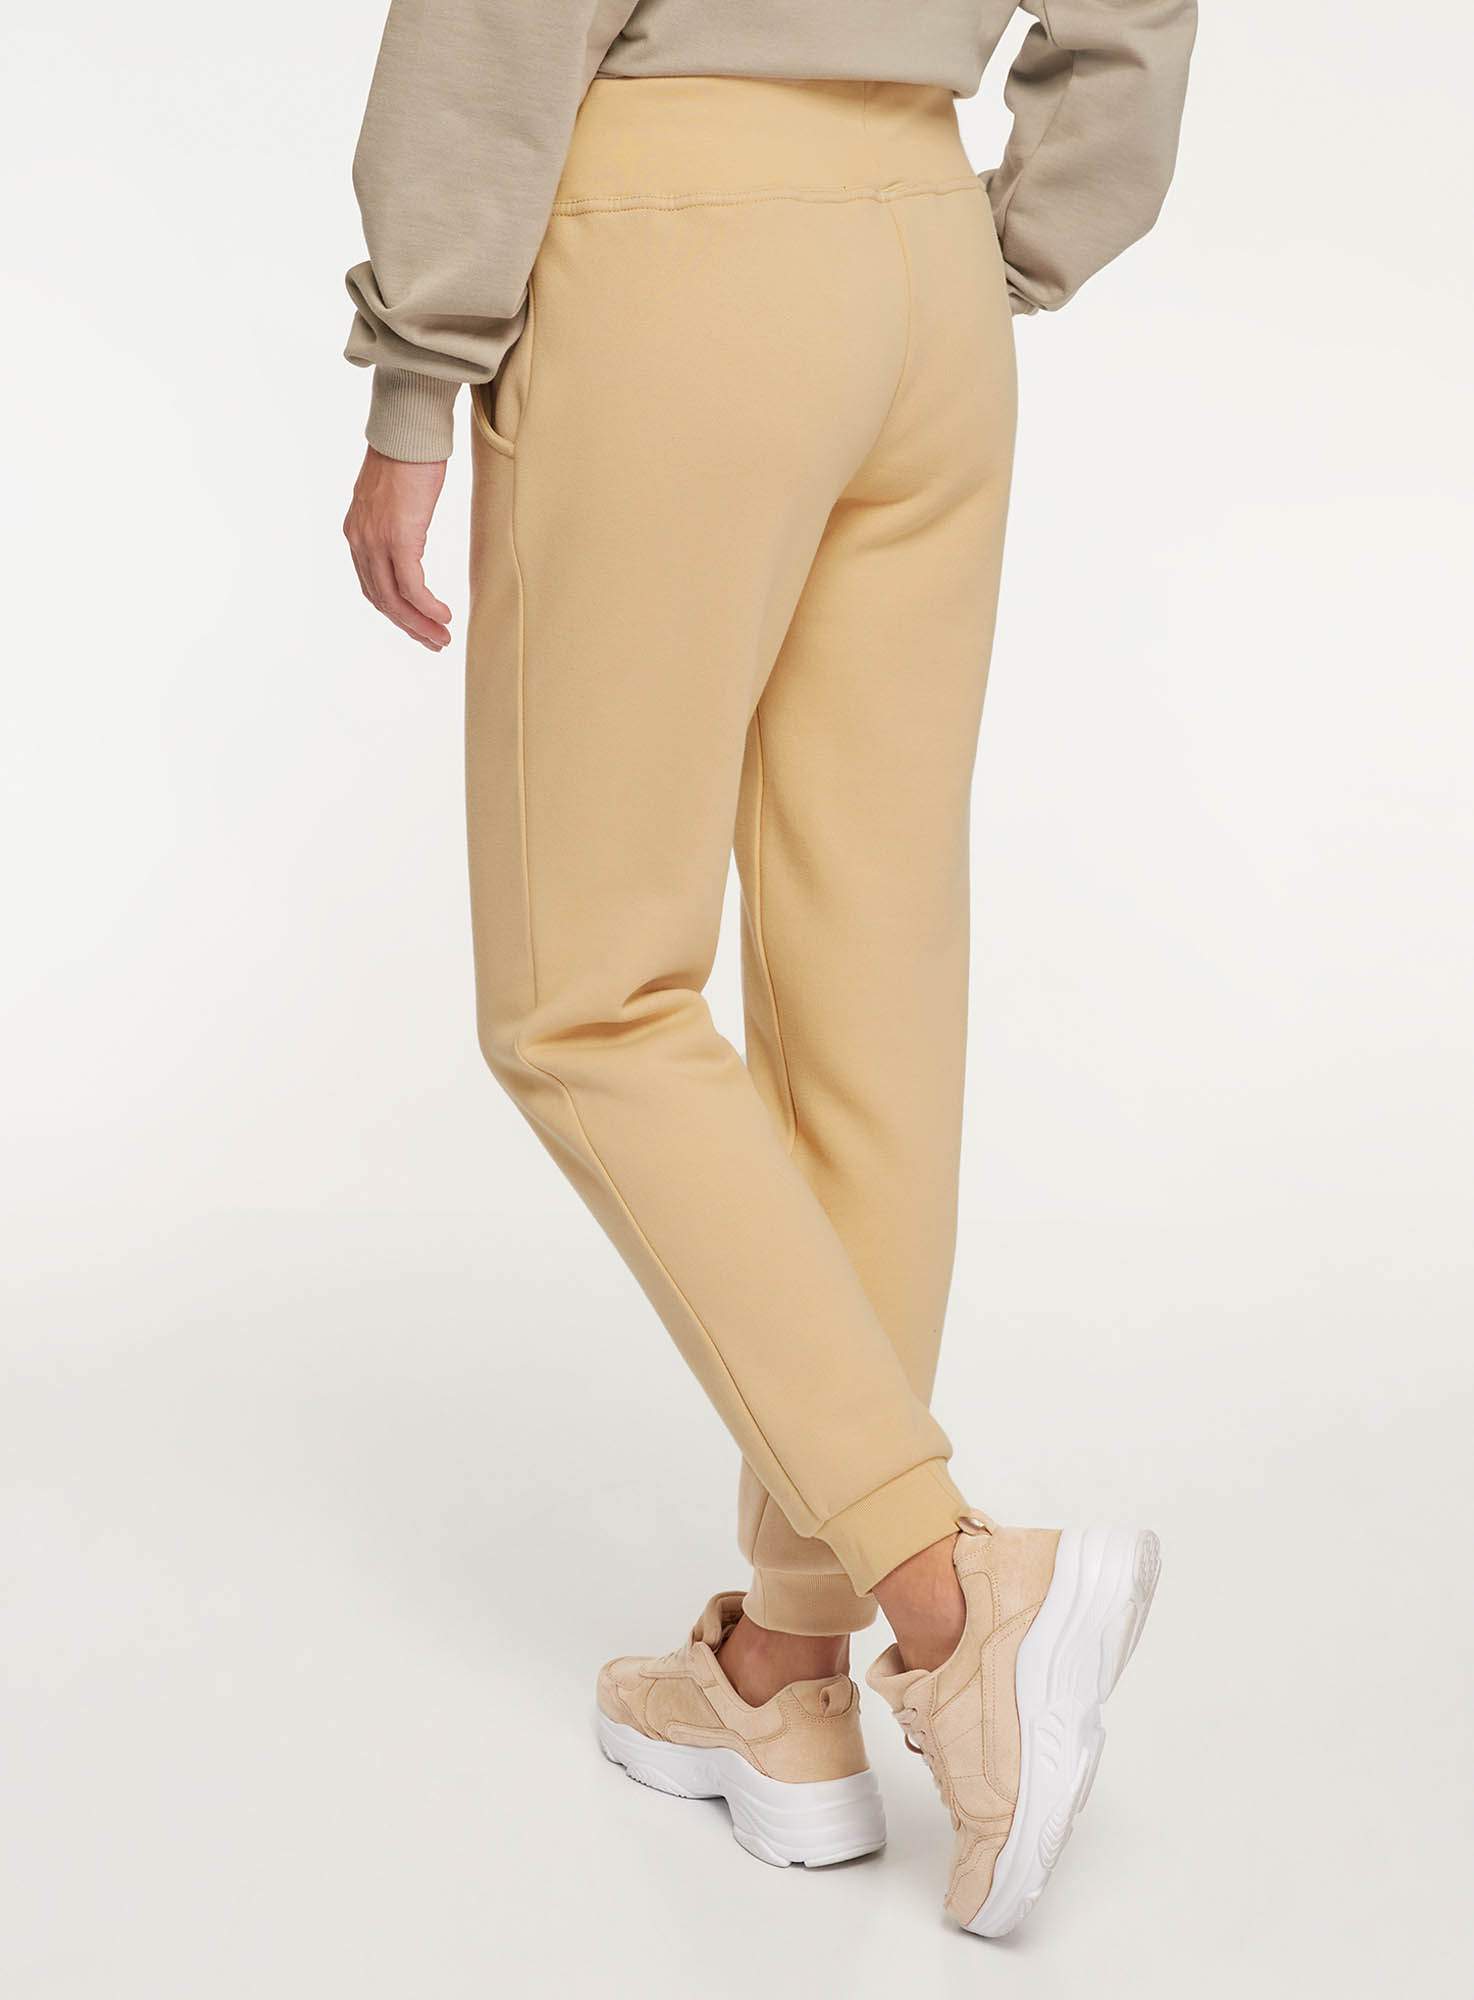 Спортивные брюки женские oodji 16700030-25B бежевые XL